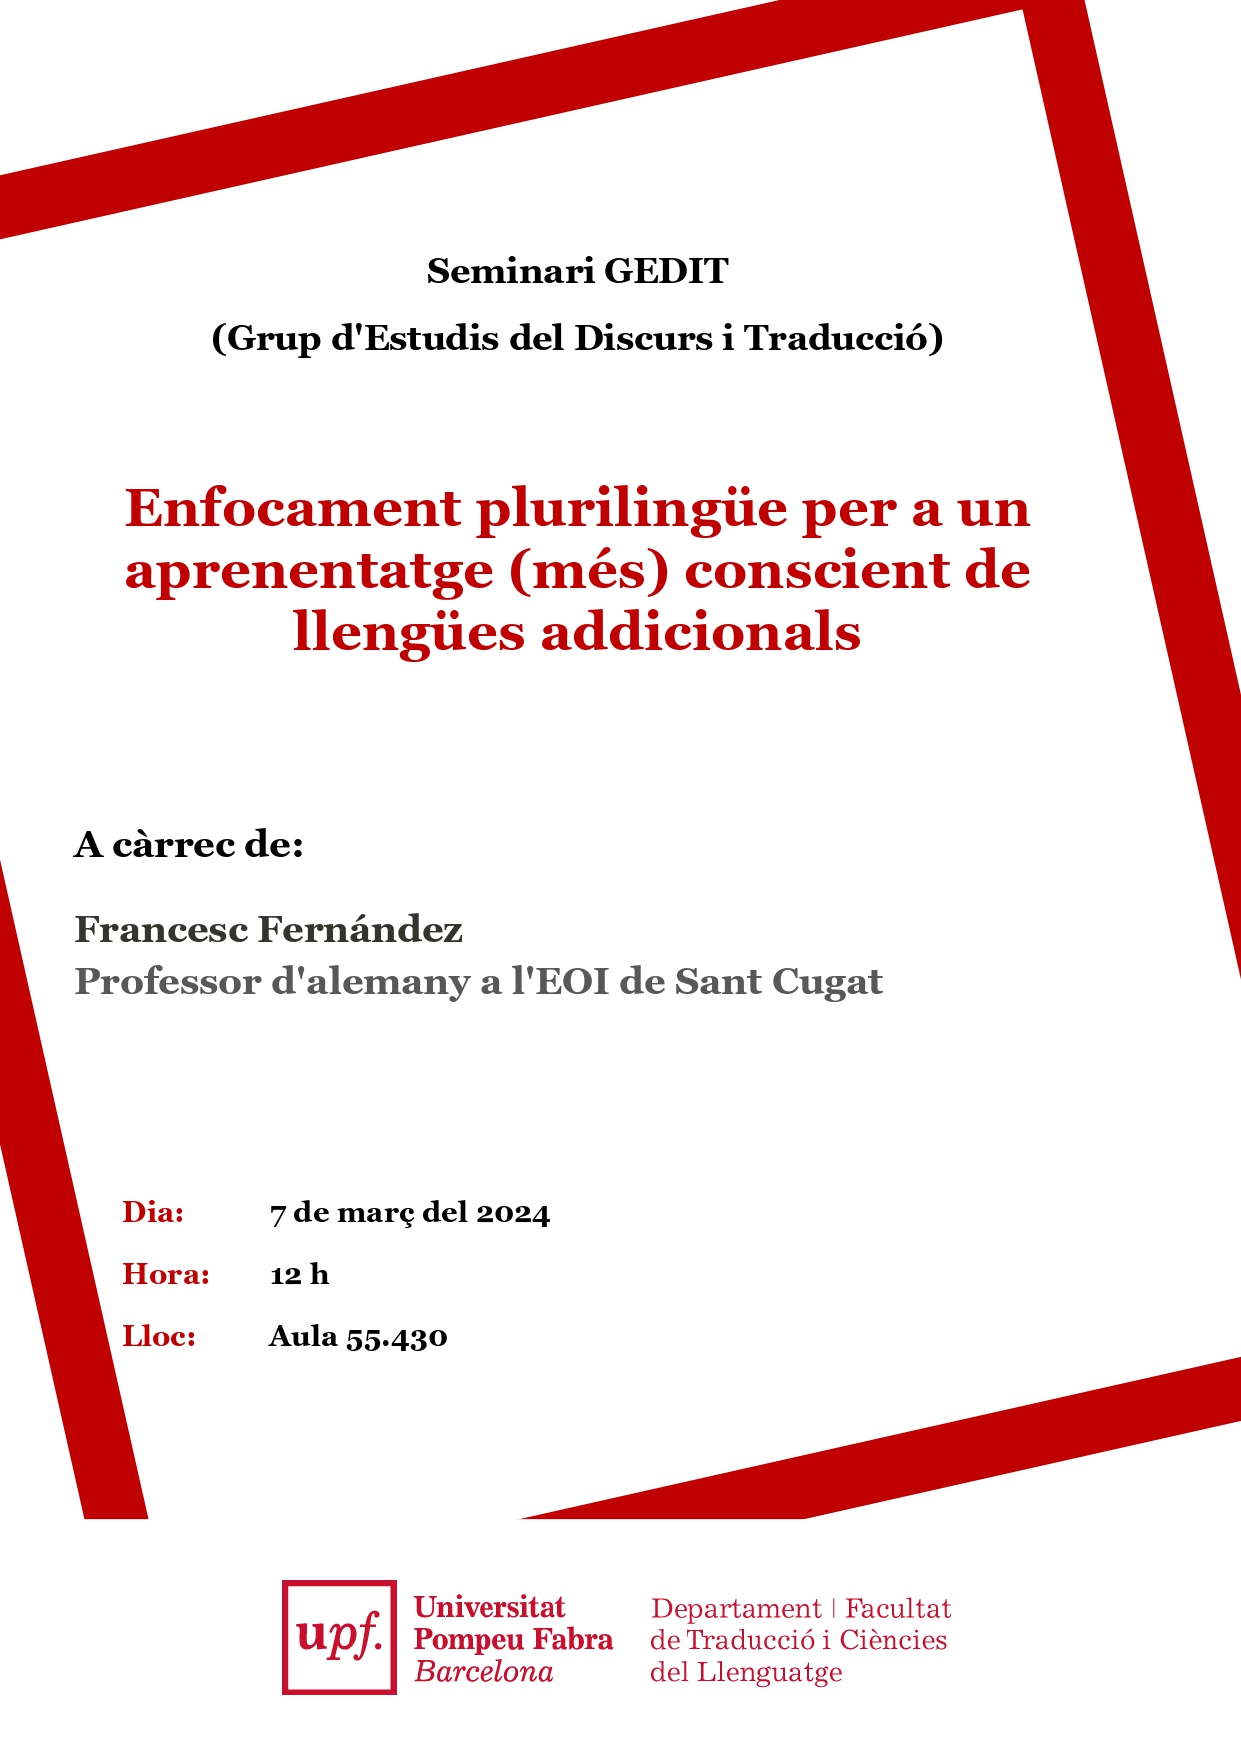 07/03/2024 Seminari de recerca del GEDIT,  a càrrec de Francesc Fernández (EOI Sant Cugat)